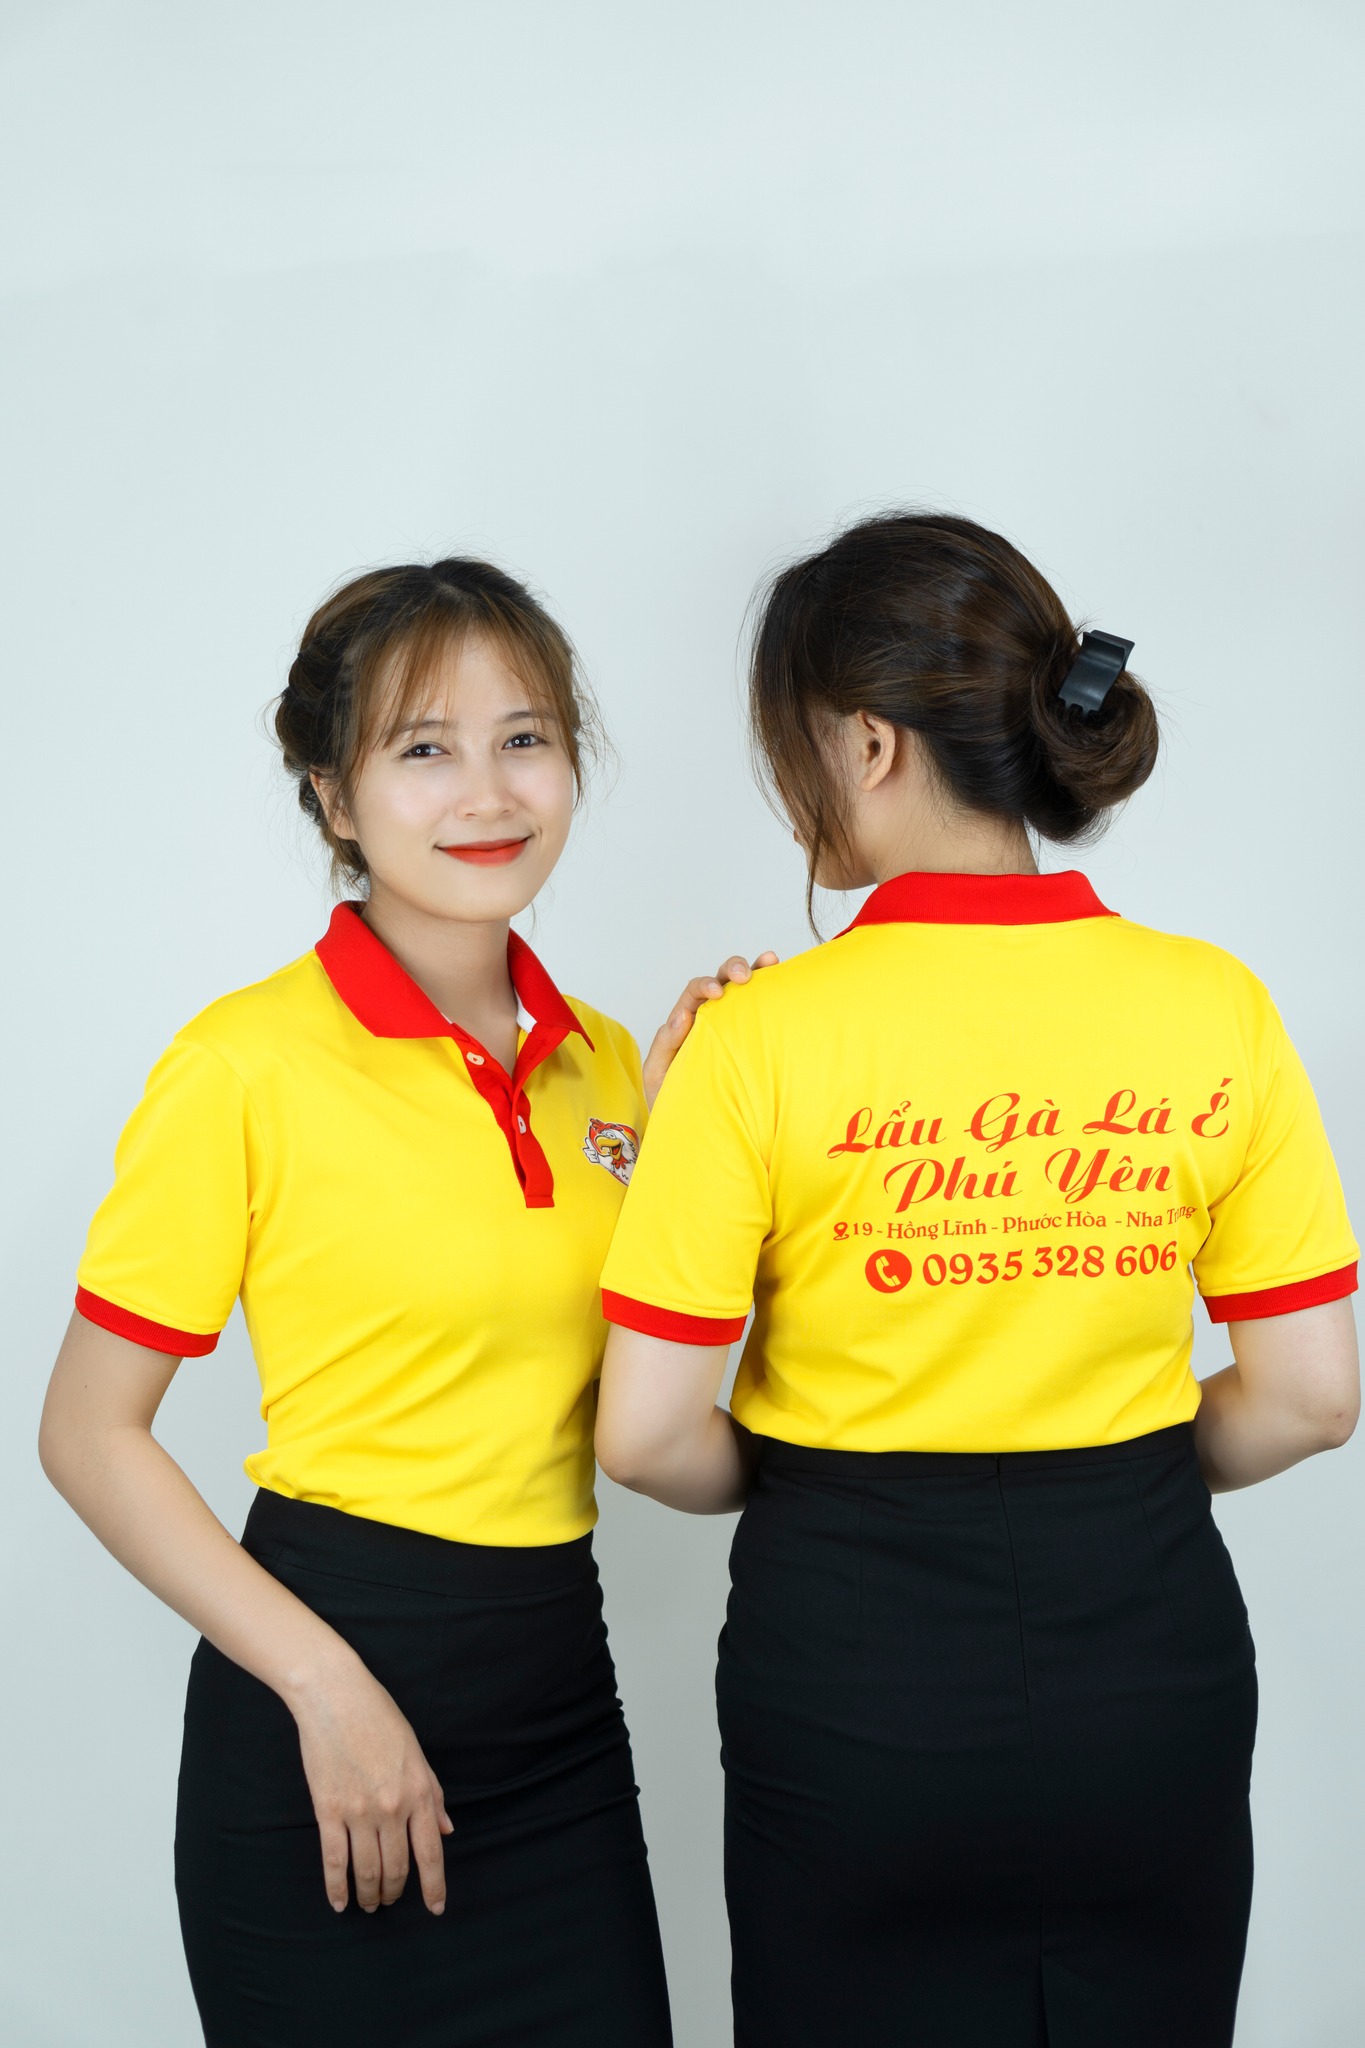 Mẫu thiết kế áo đồng phục Phở gà lá é Phú Yên